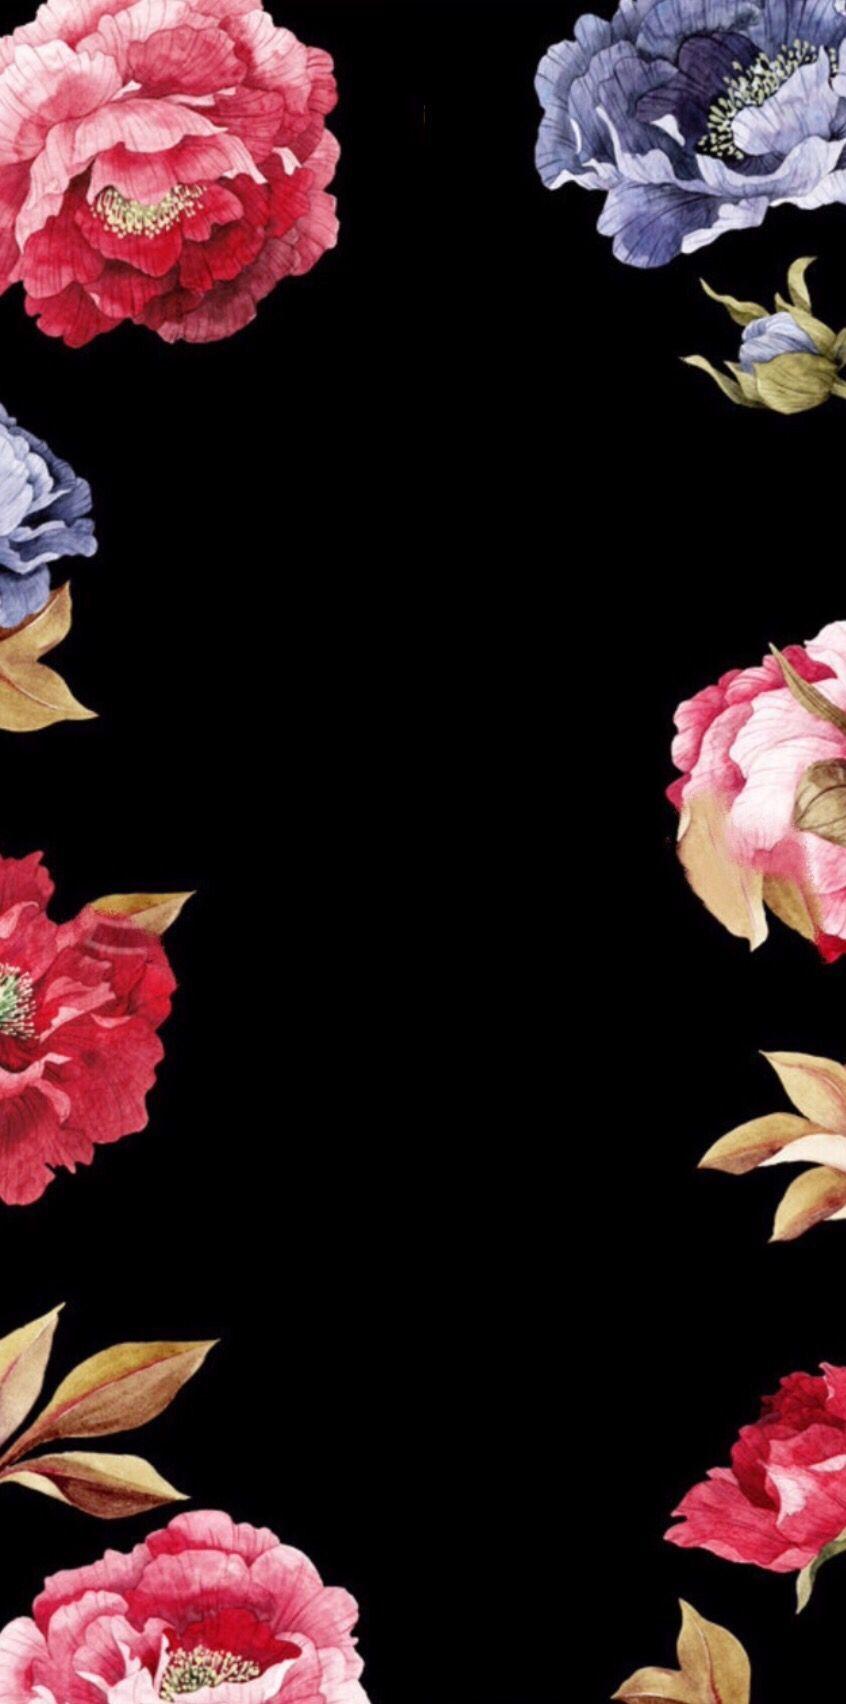 Download Gambar Wallpaper for Iphone with Flowers terbaru 2020